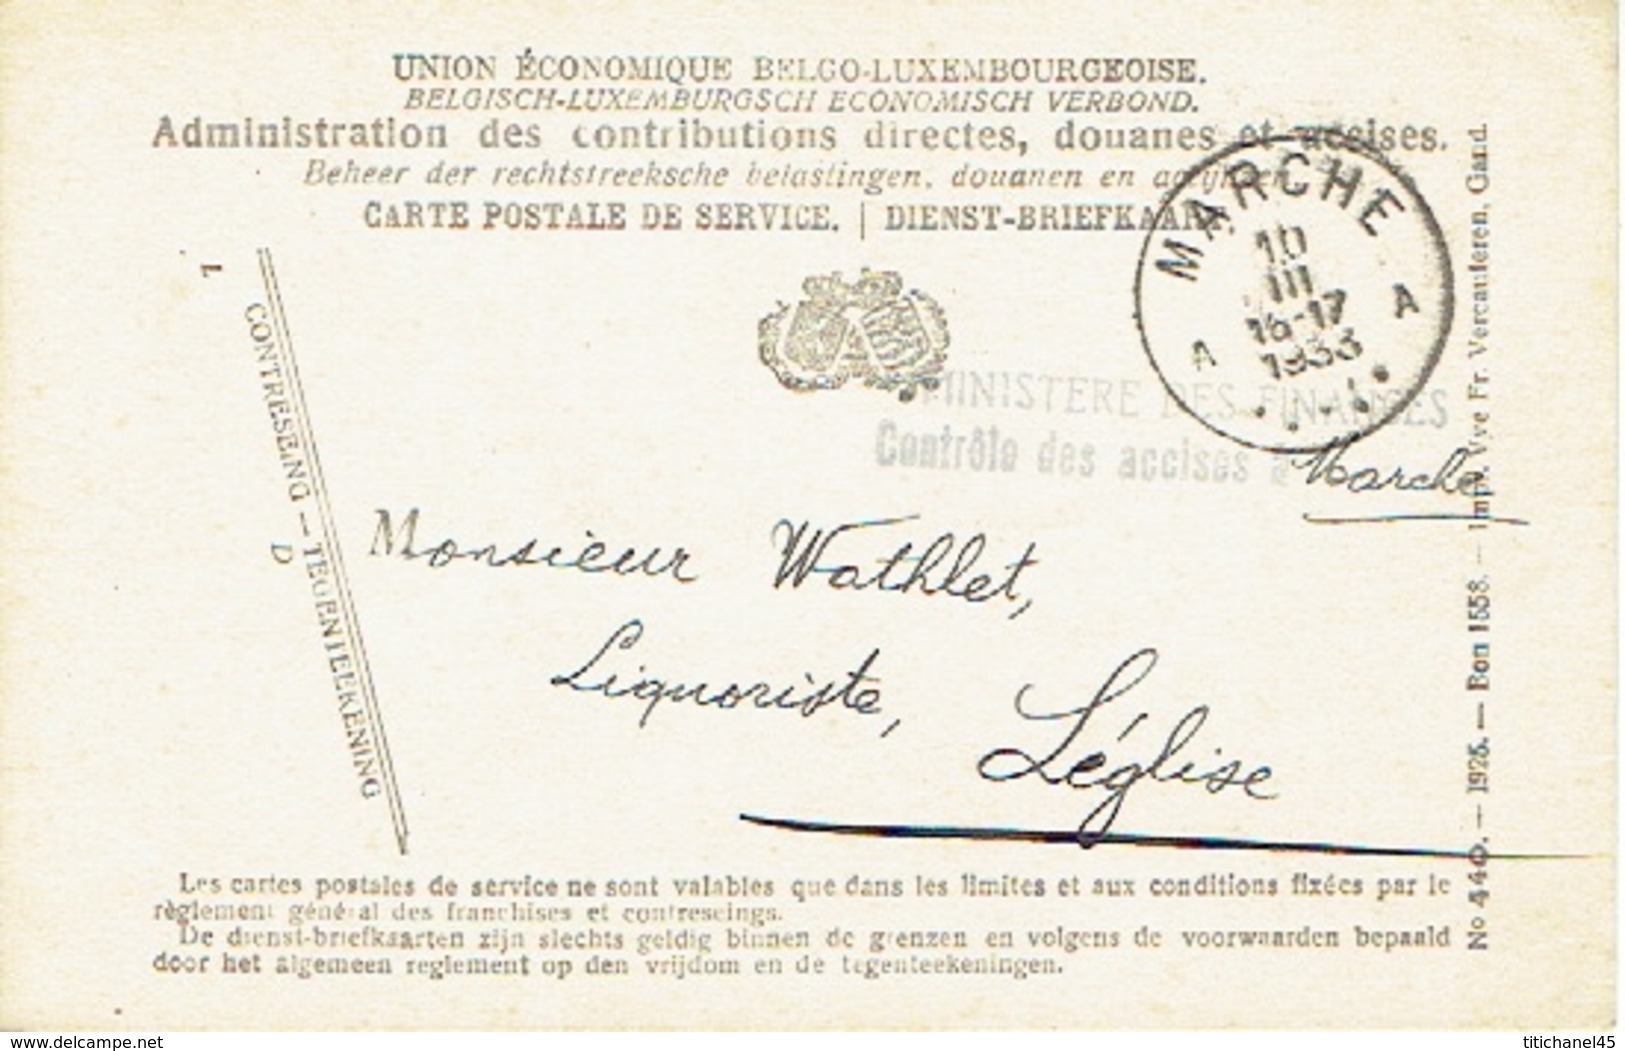 1933 Carte Postale De Service - MINISTERE DES FINANCES CONTROLE DES ACCISES à MARCHE Vers LEGLISE - Zonder Portkosten